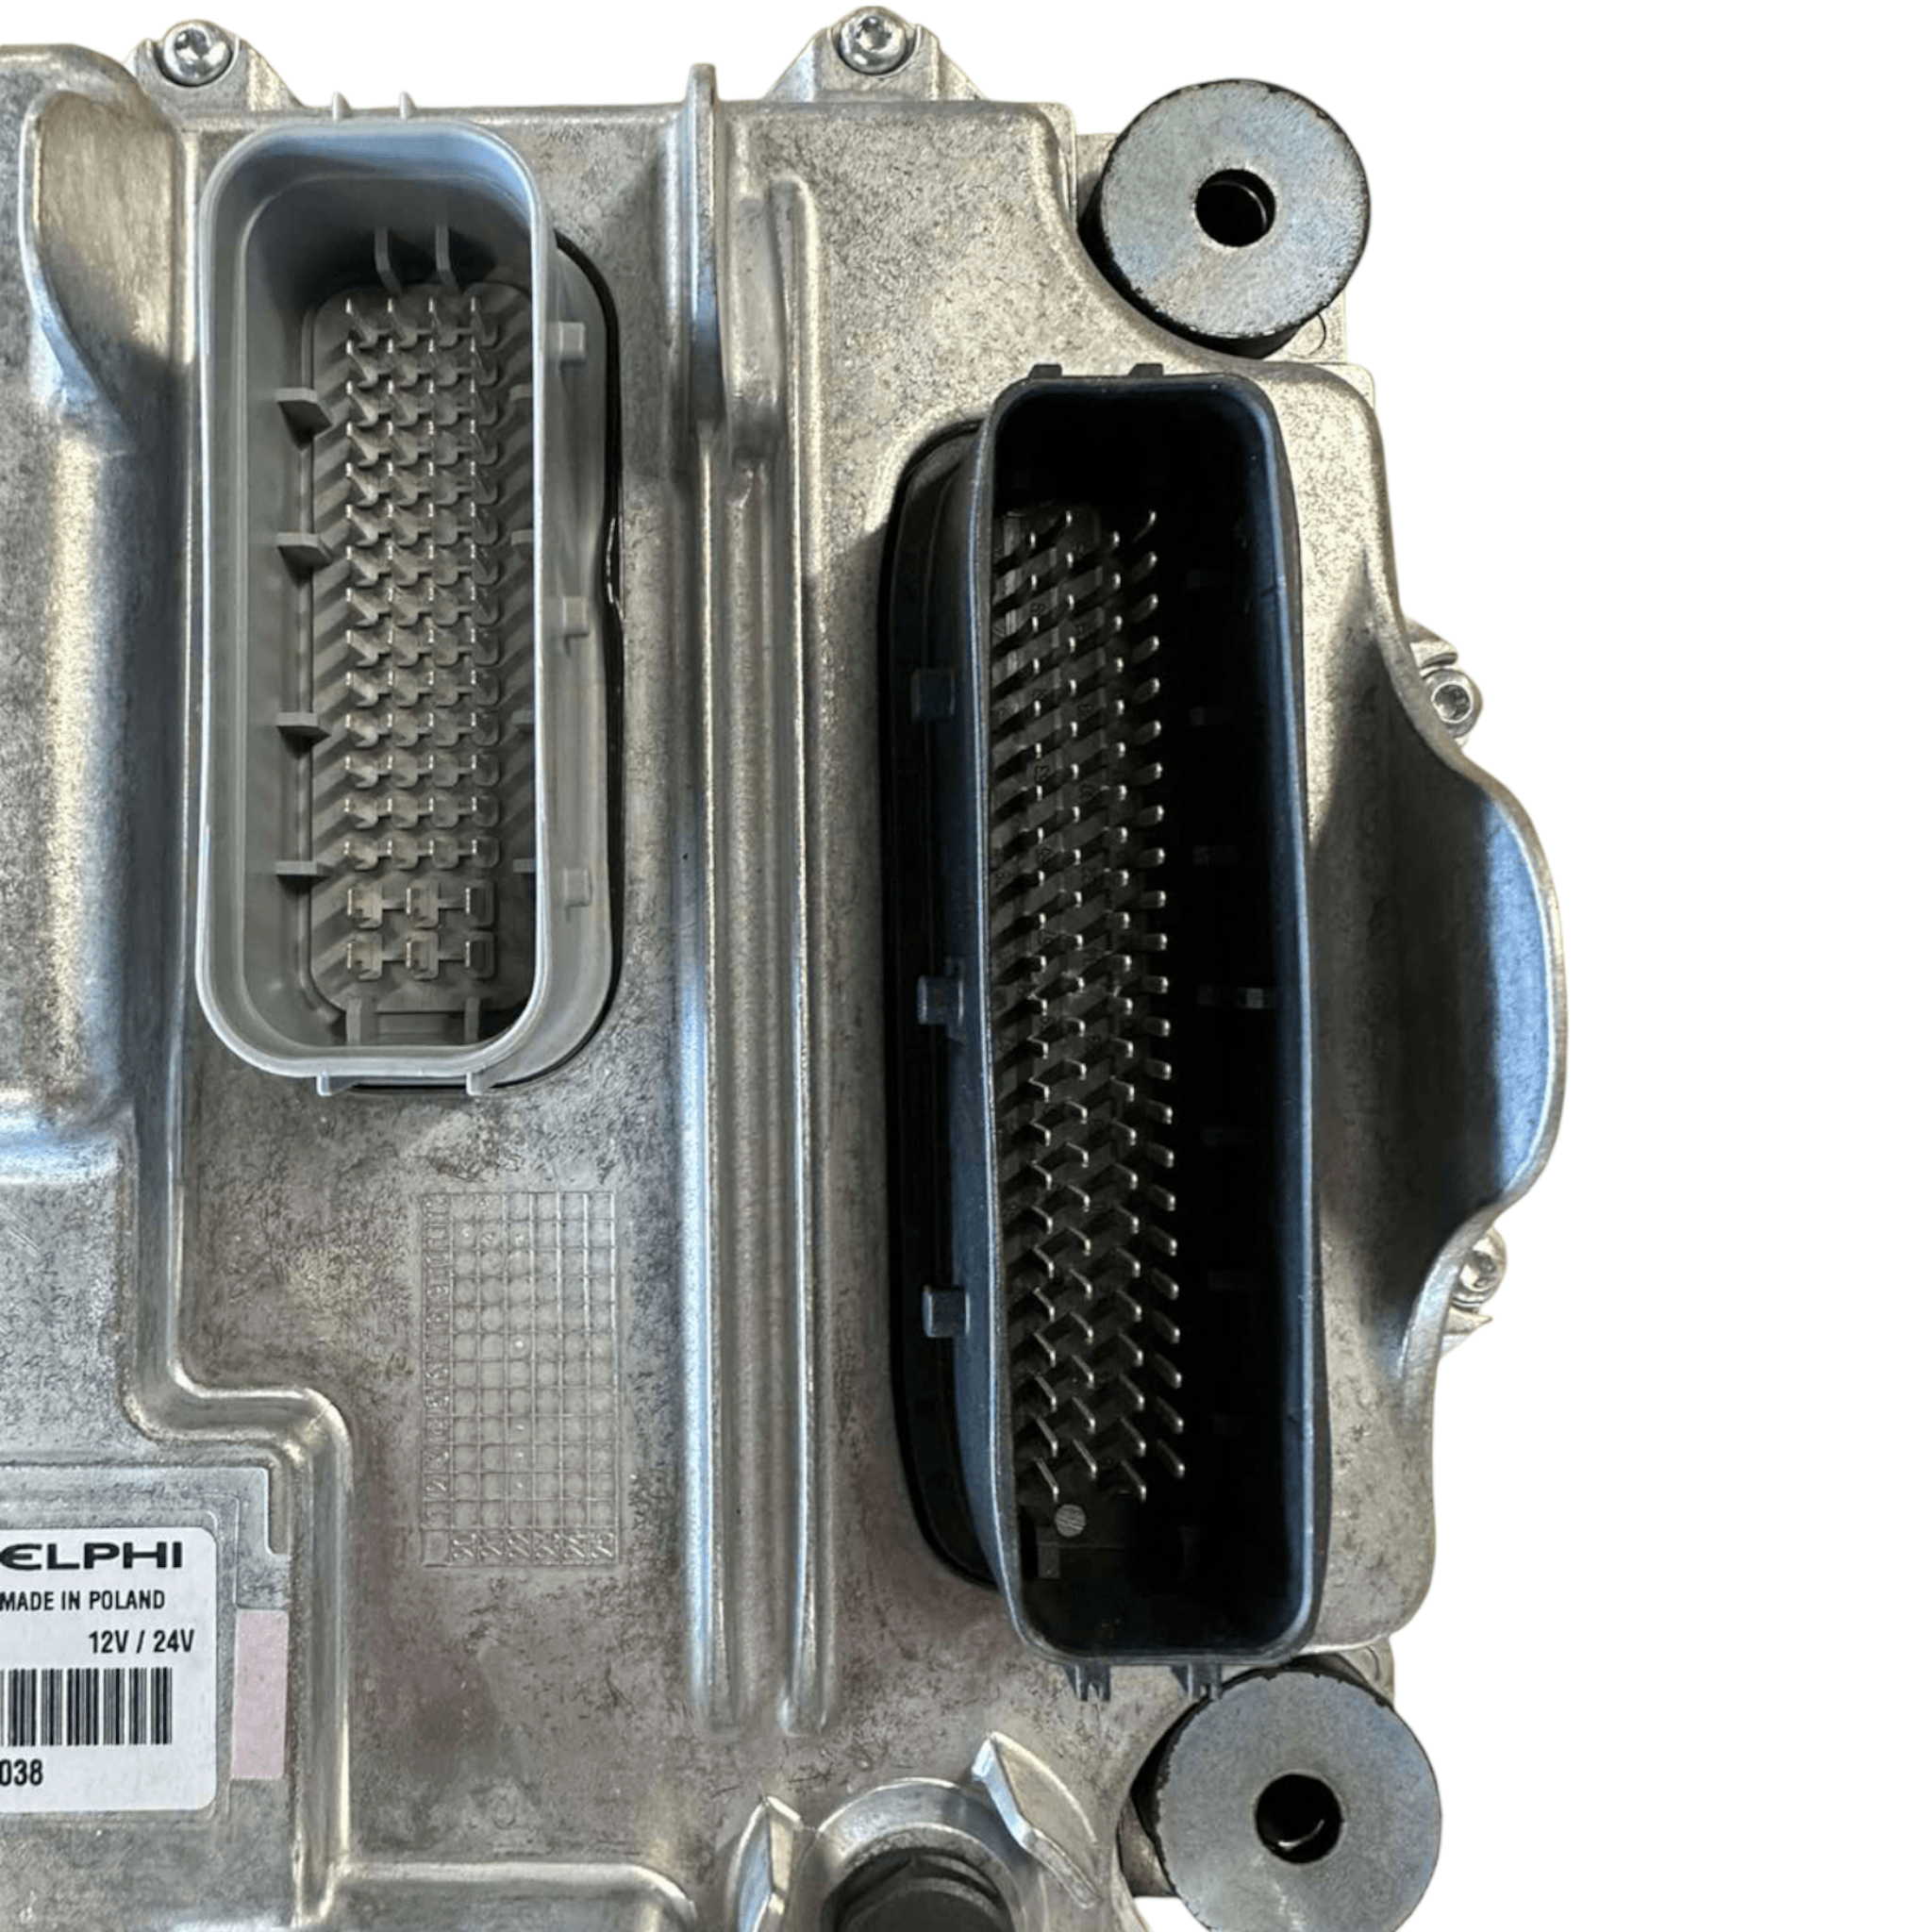 2109555 Paccar® Ecm Engine Control Module For Mx13 Kenworth Peterbilt - ADVANCED TRUCK PARTS